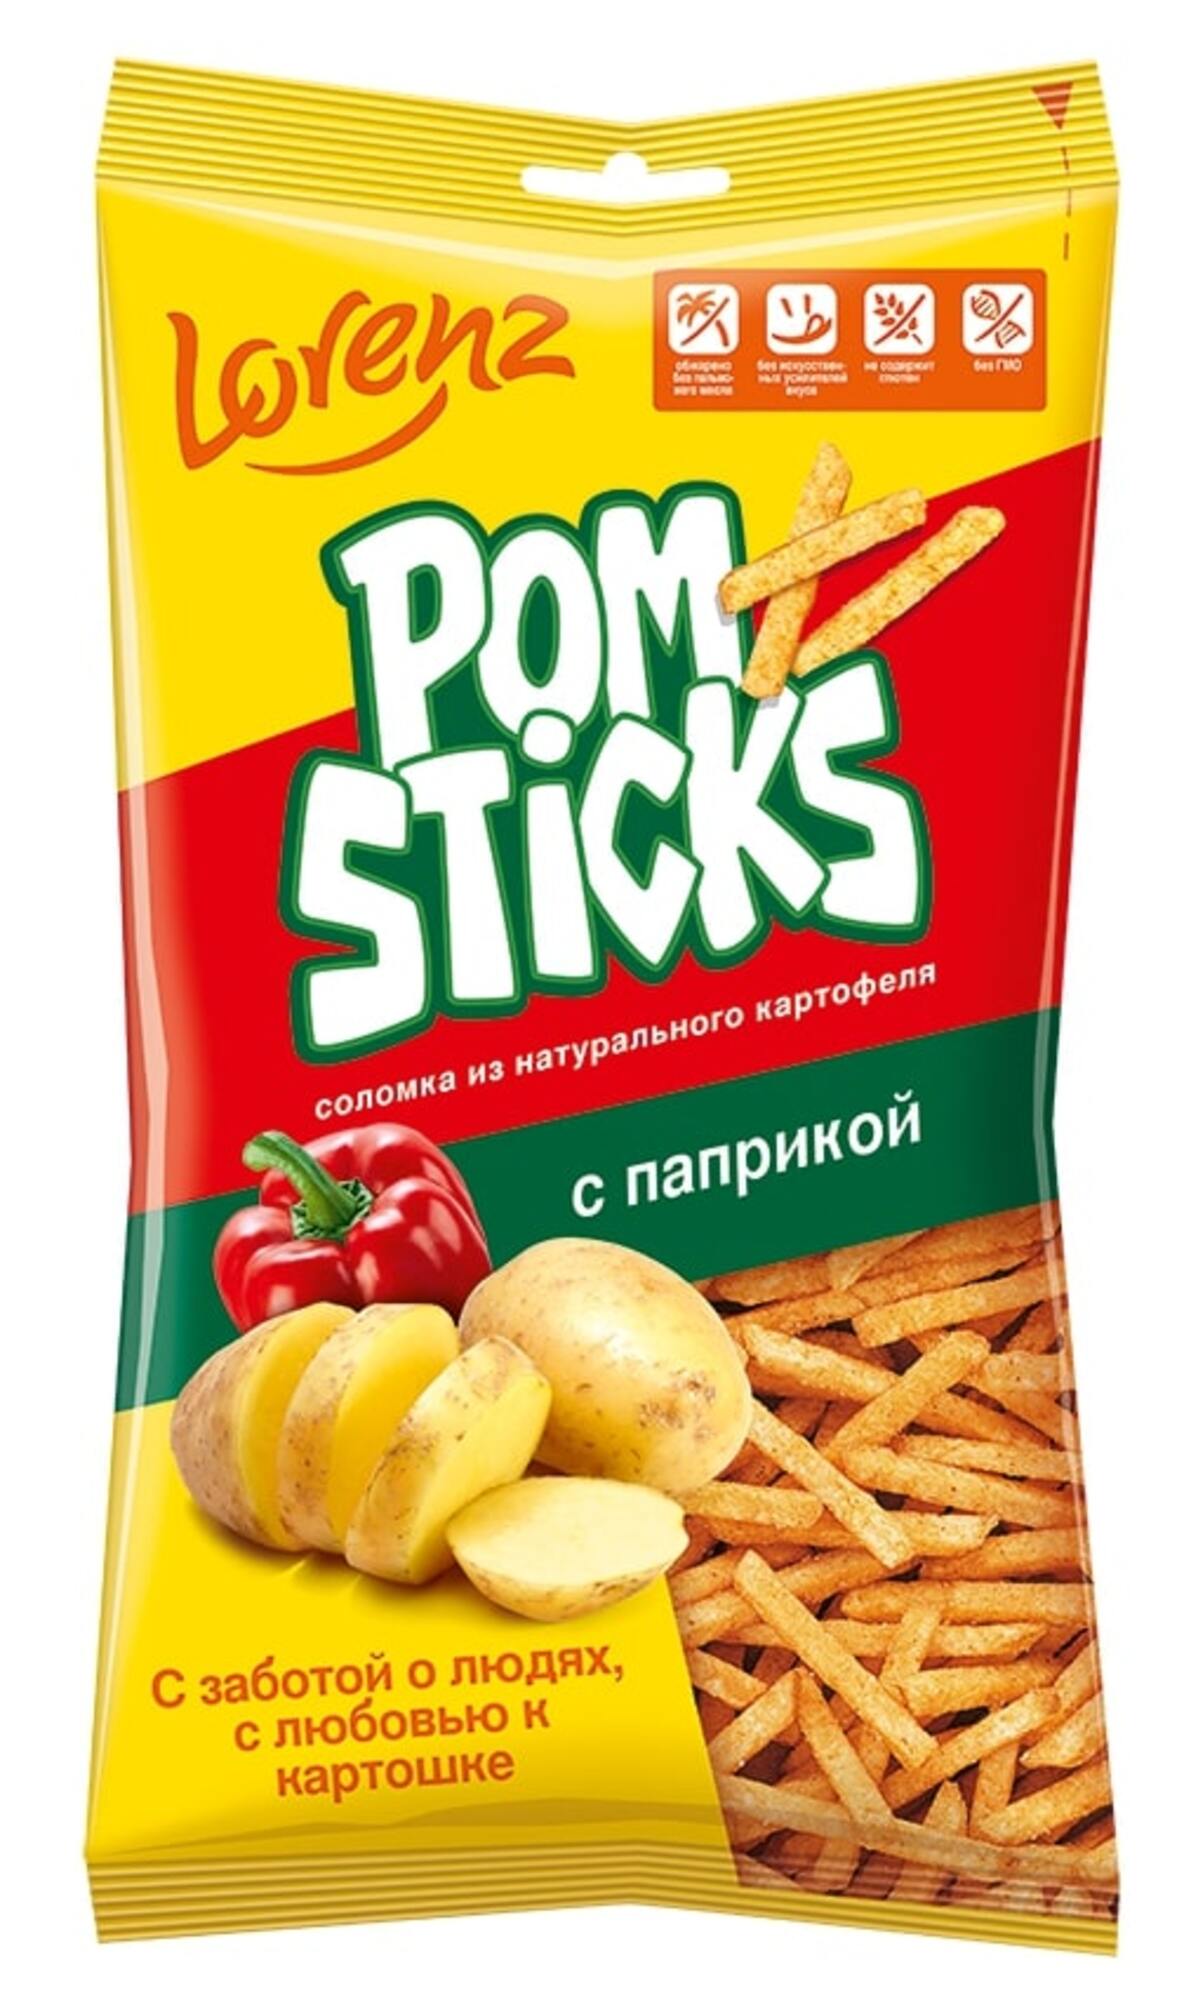 Картофельные чипсы Lorenz 100 грамм - фото 1